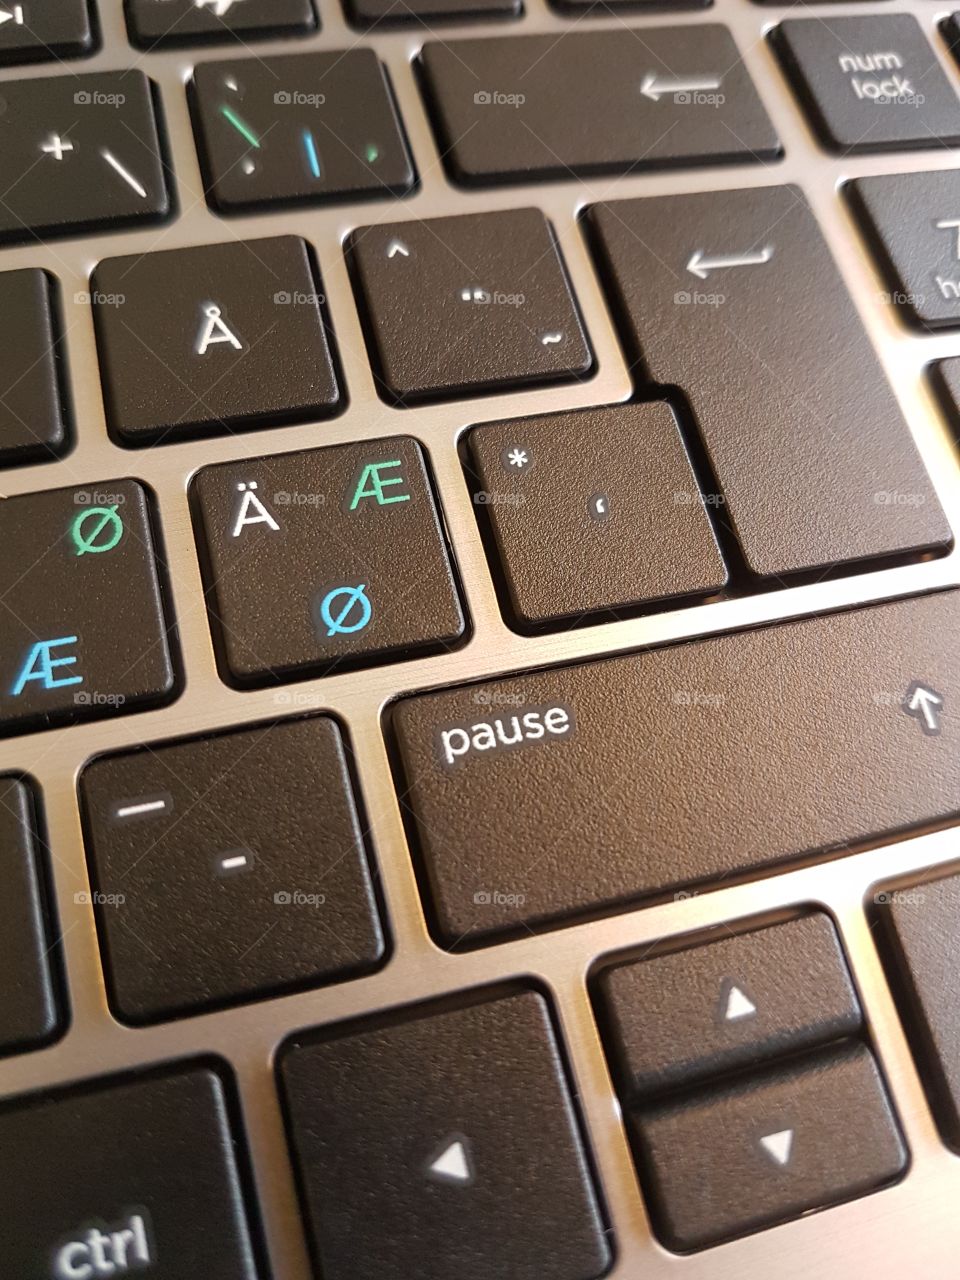 pause mode keyboard laptop